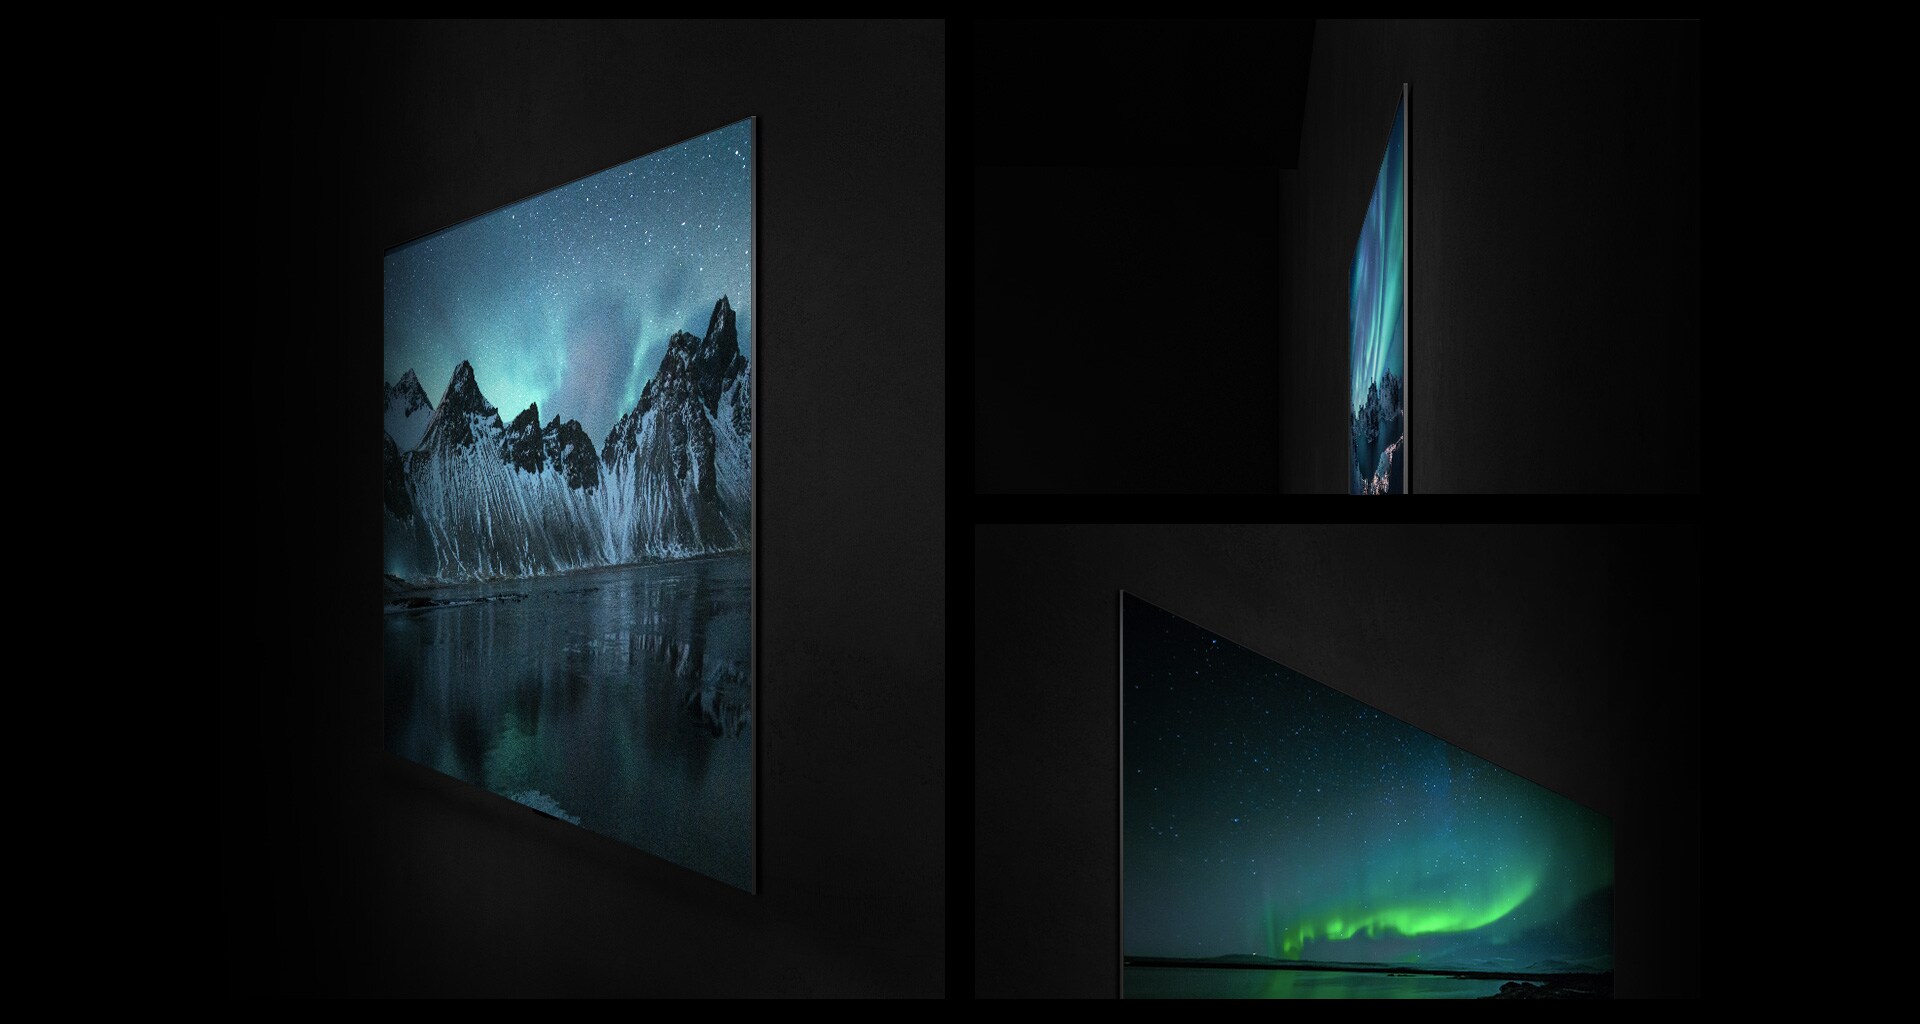 Telewizor OLED LG zamontowany na ścianie jest pokazany pod różnymi kątami, aby podkreślić Gallery Design i płaski tył